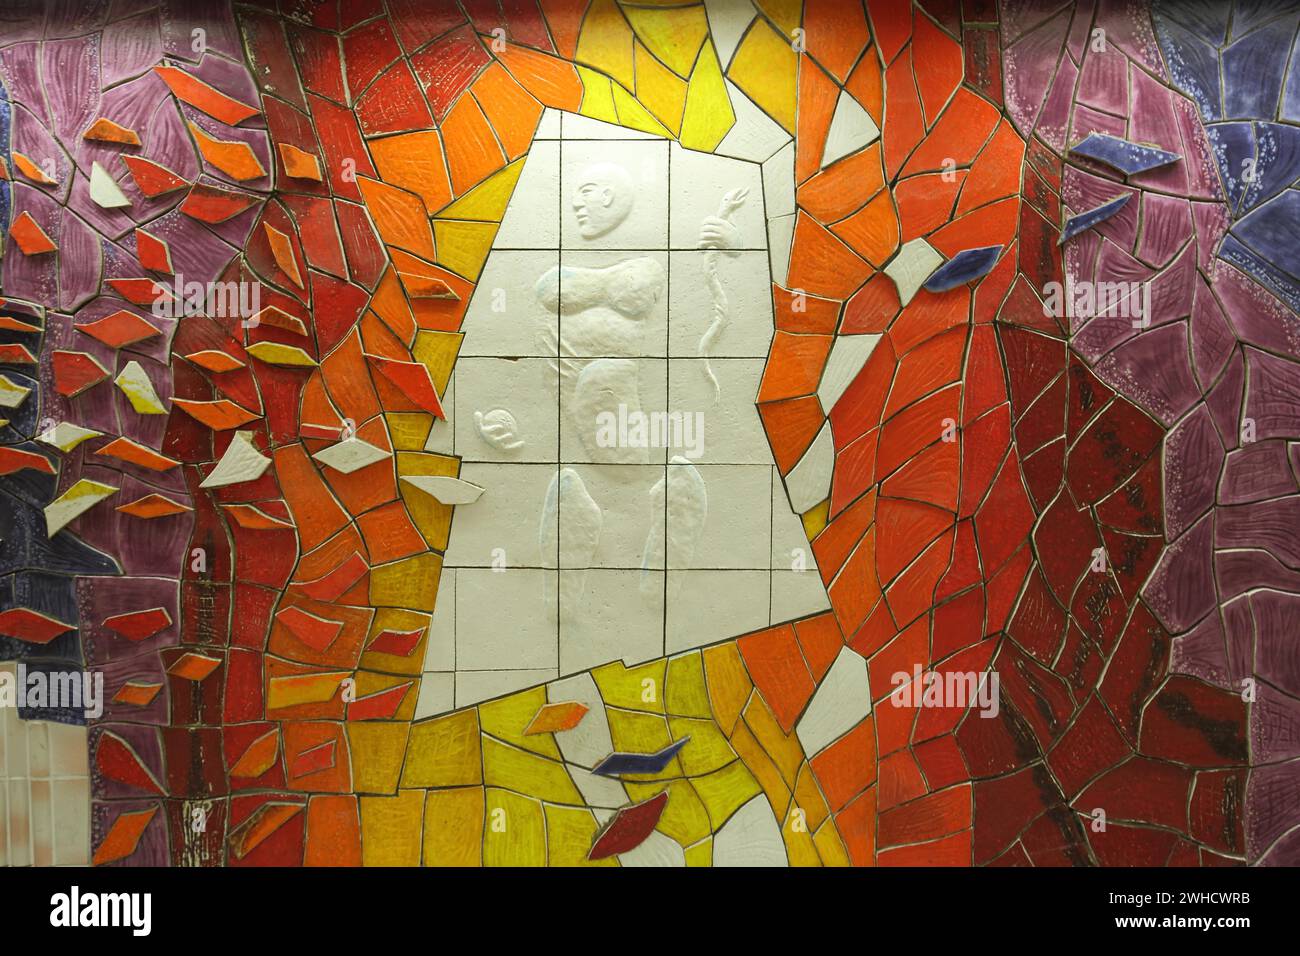 Dettaglio della scultura Human Family di Peter Piniski 1992, pittura, piastrelle, murale, arte moderna, bianco, colorato, rosso, giallo, personaggio, sollievo, amico Foto Stock